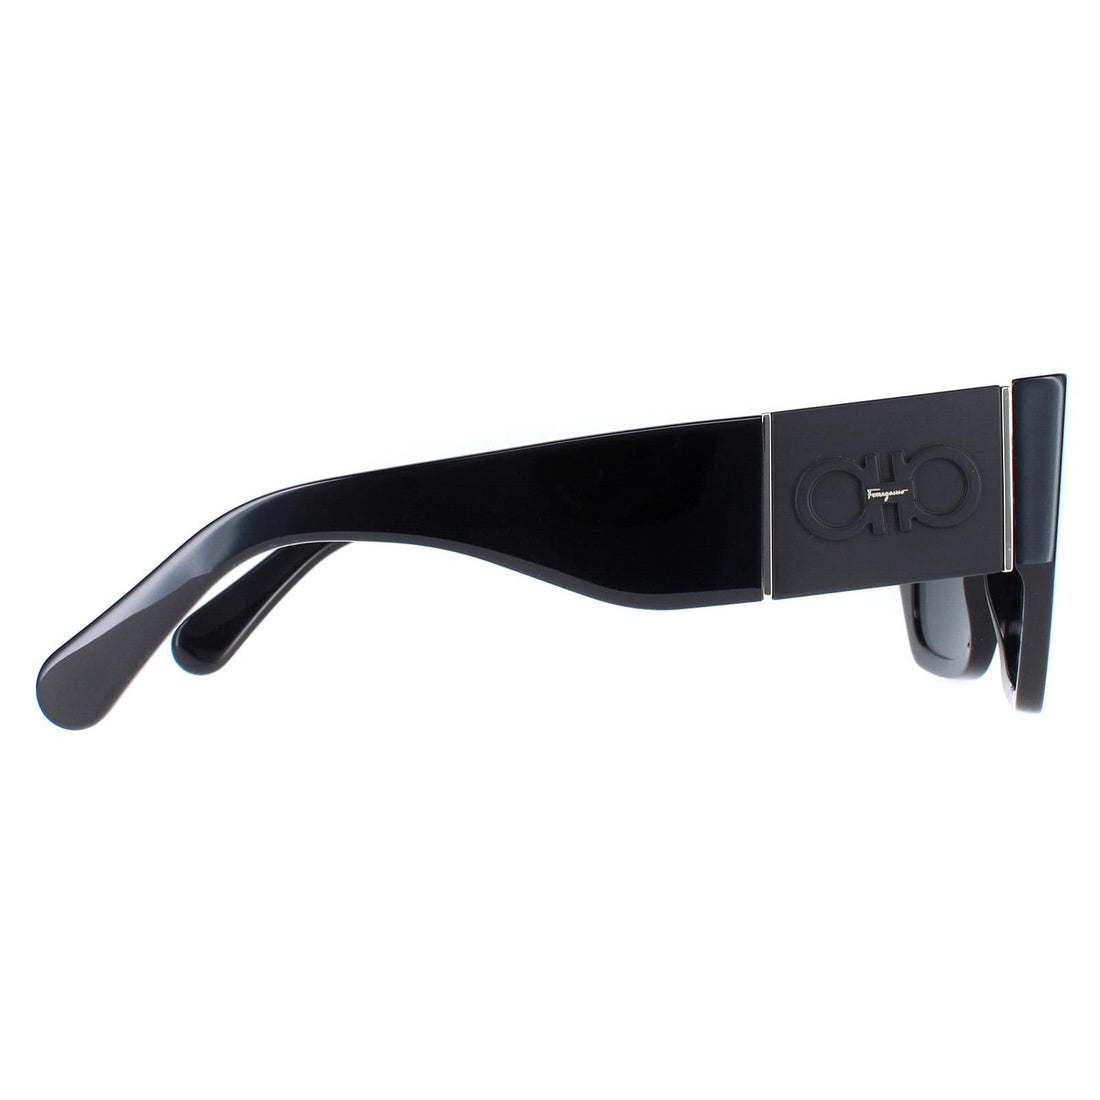 Salvatore Ferragamo Sunglasses SF1059S 001 Black Grey